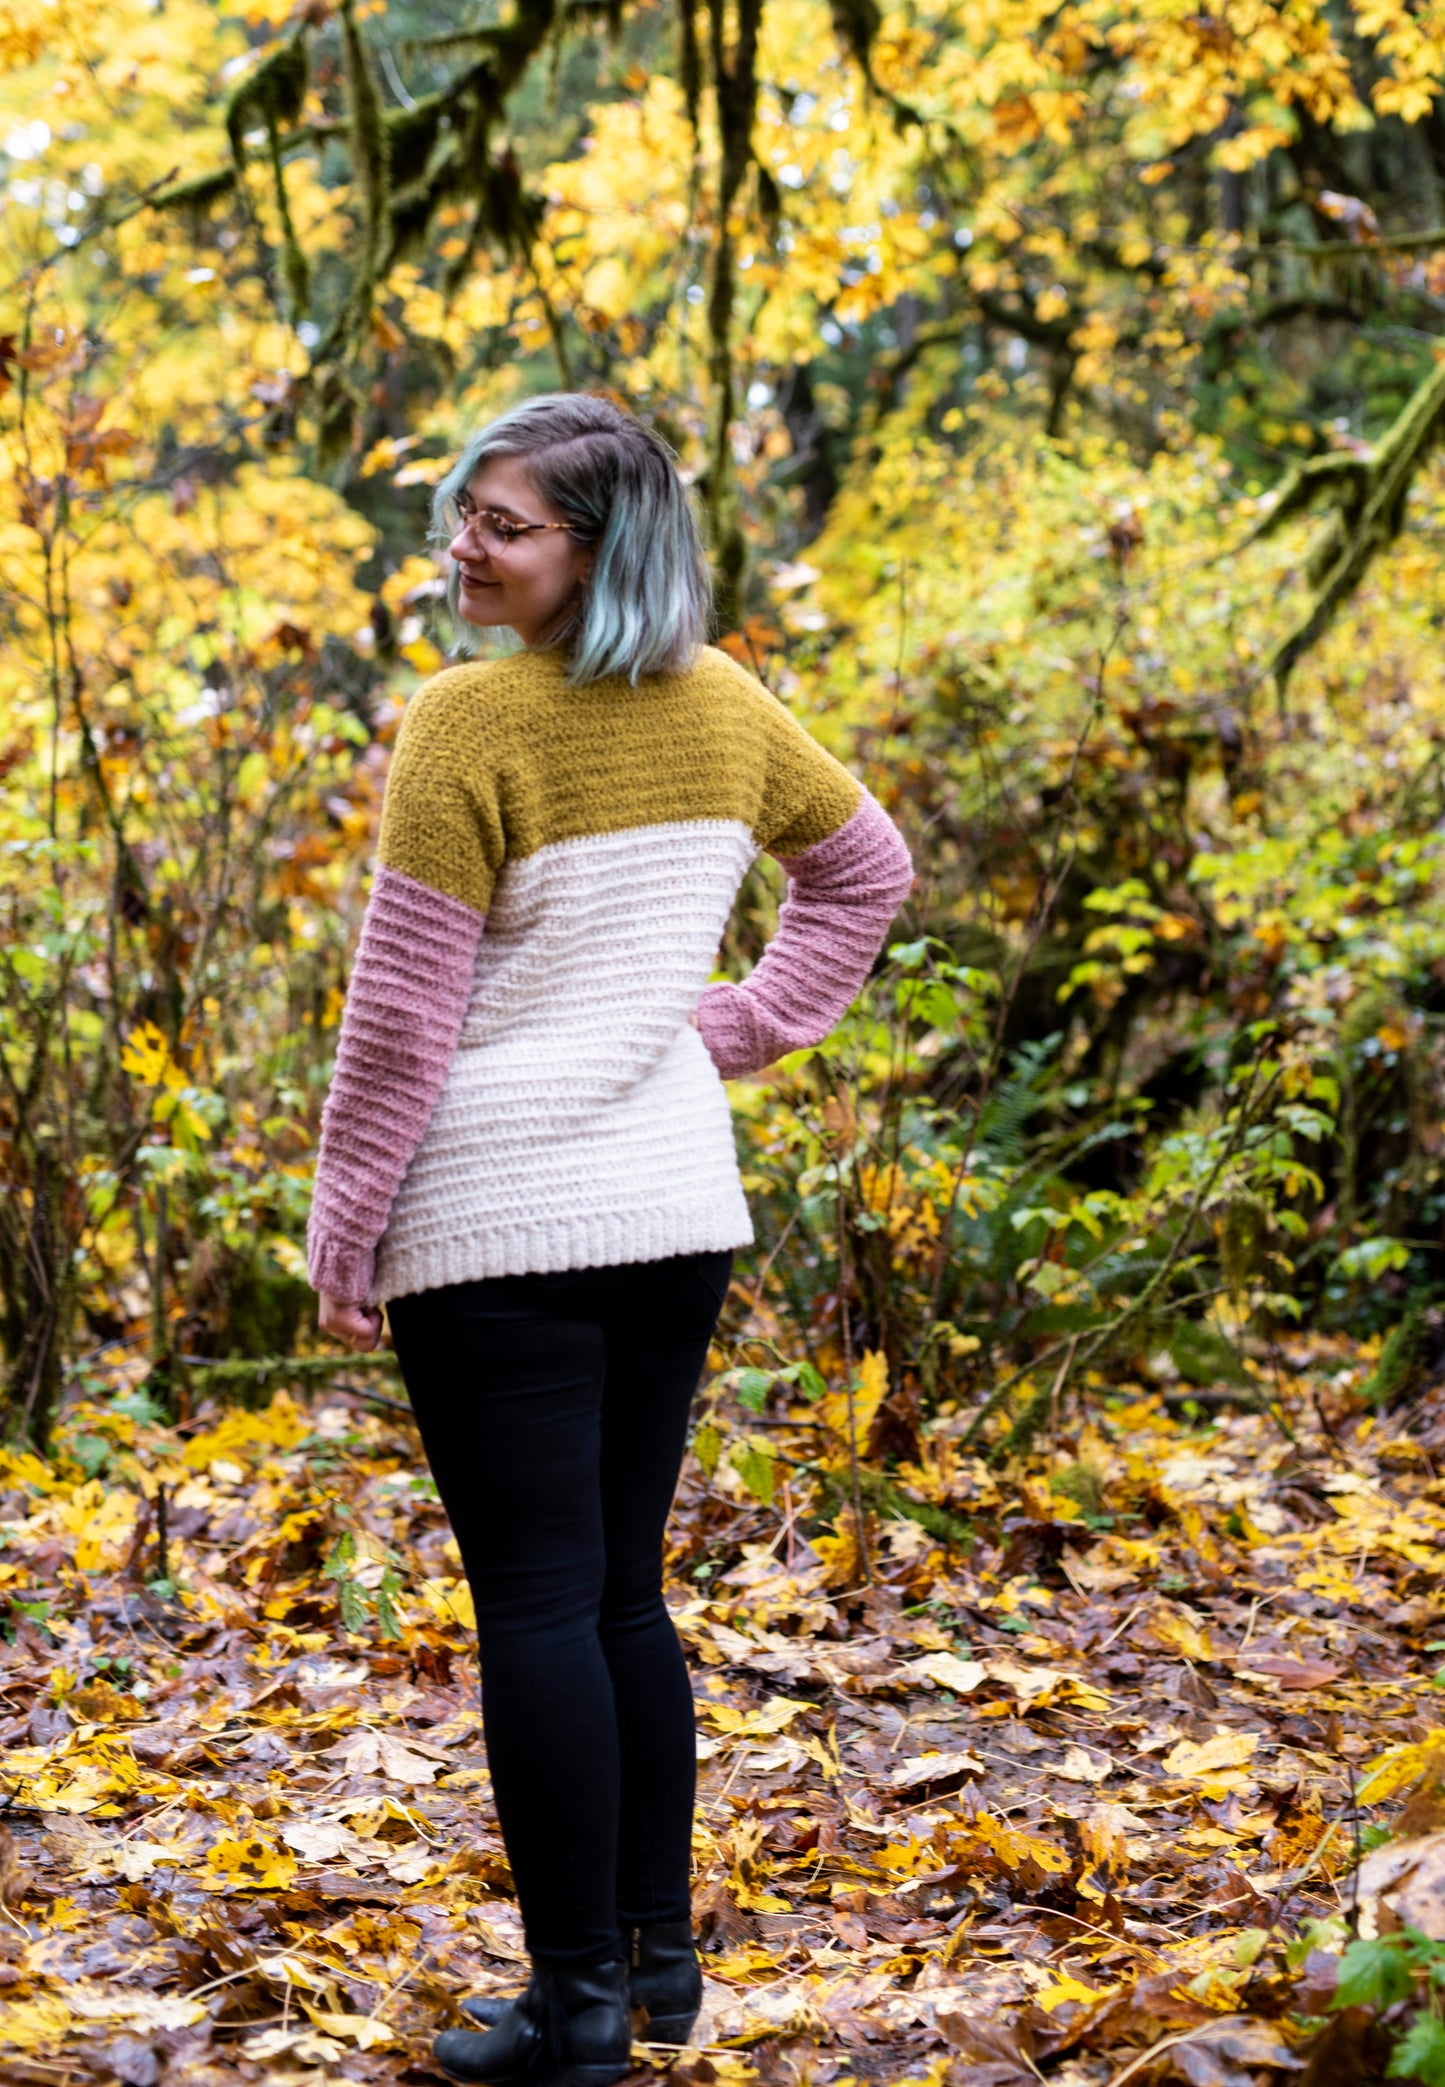 Crochet Pattern: The Spoonbill Sweater